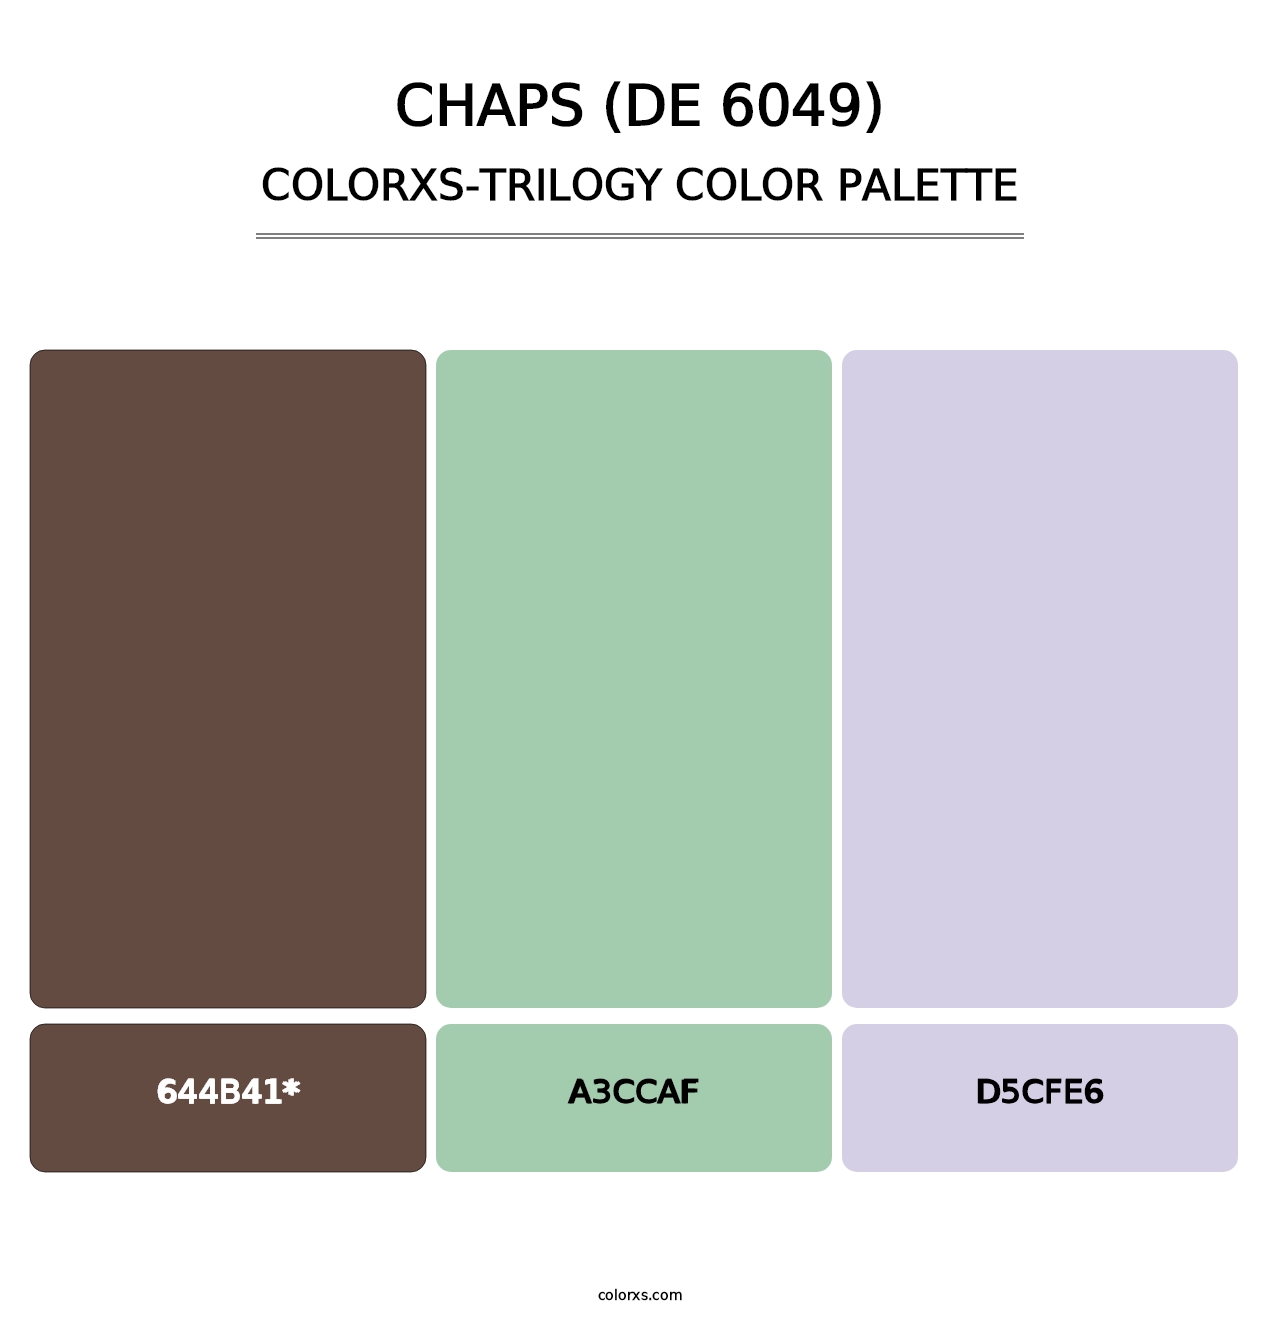 Chaps (DE 6049) - Colorxs Trilogy Palette